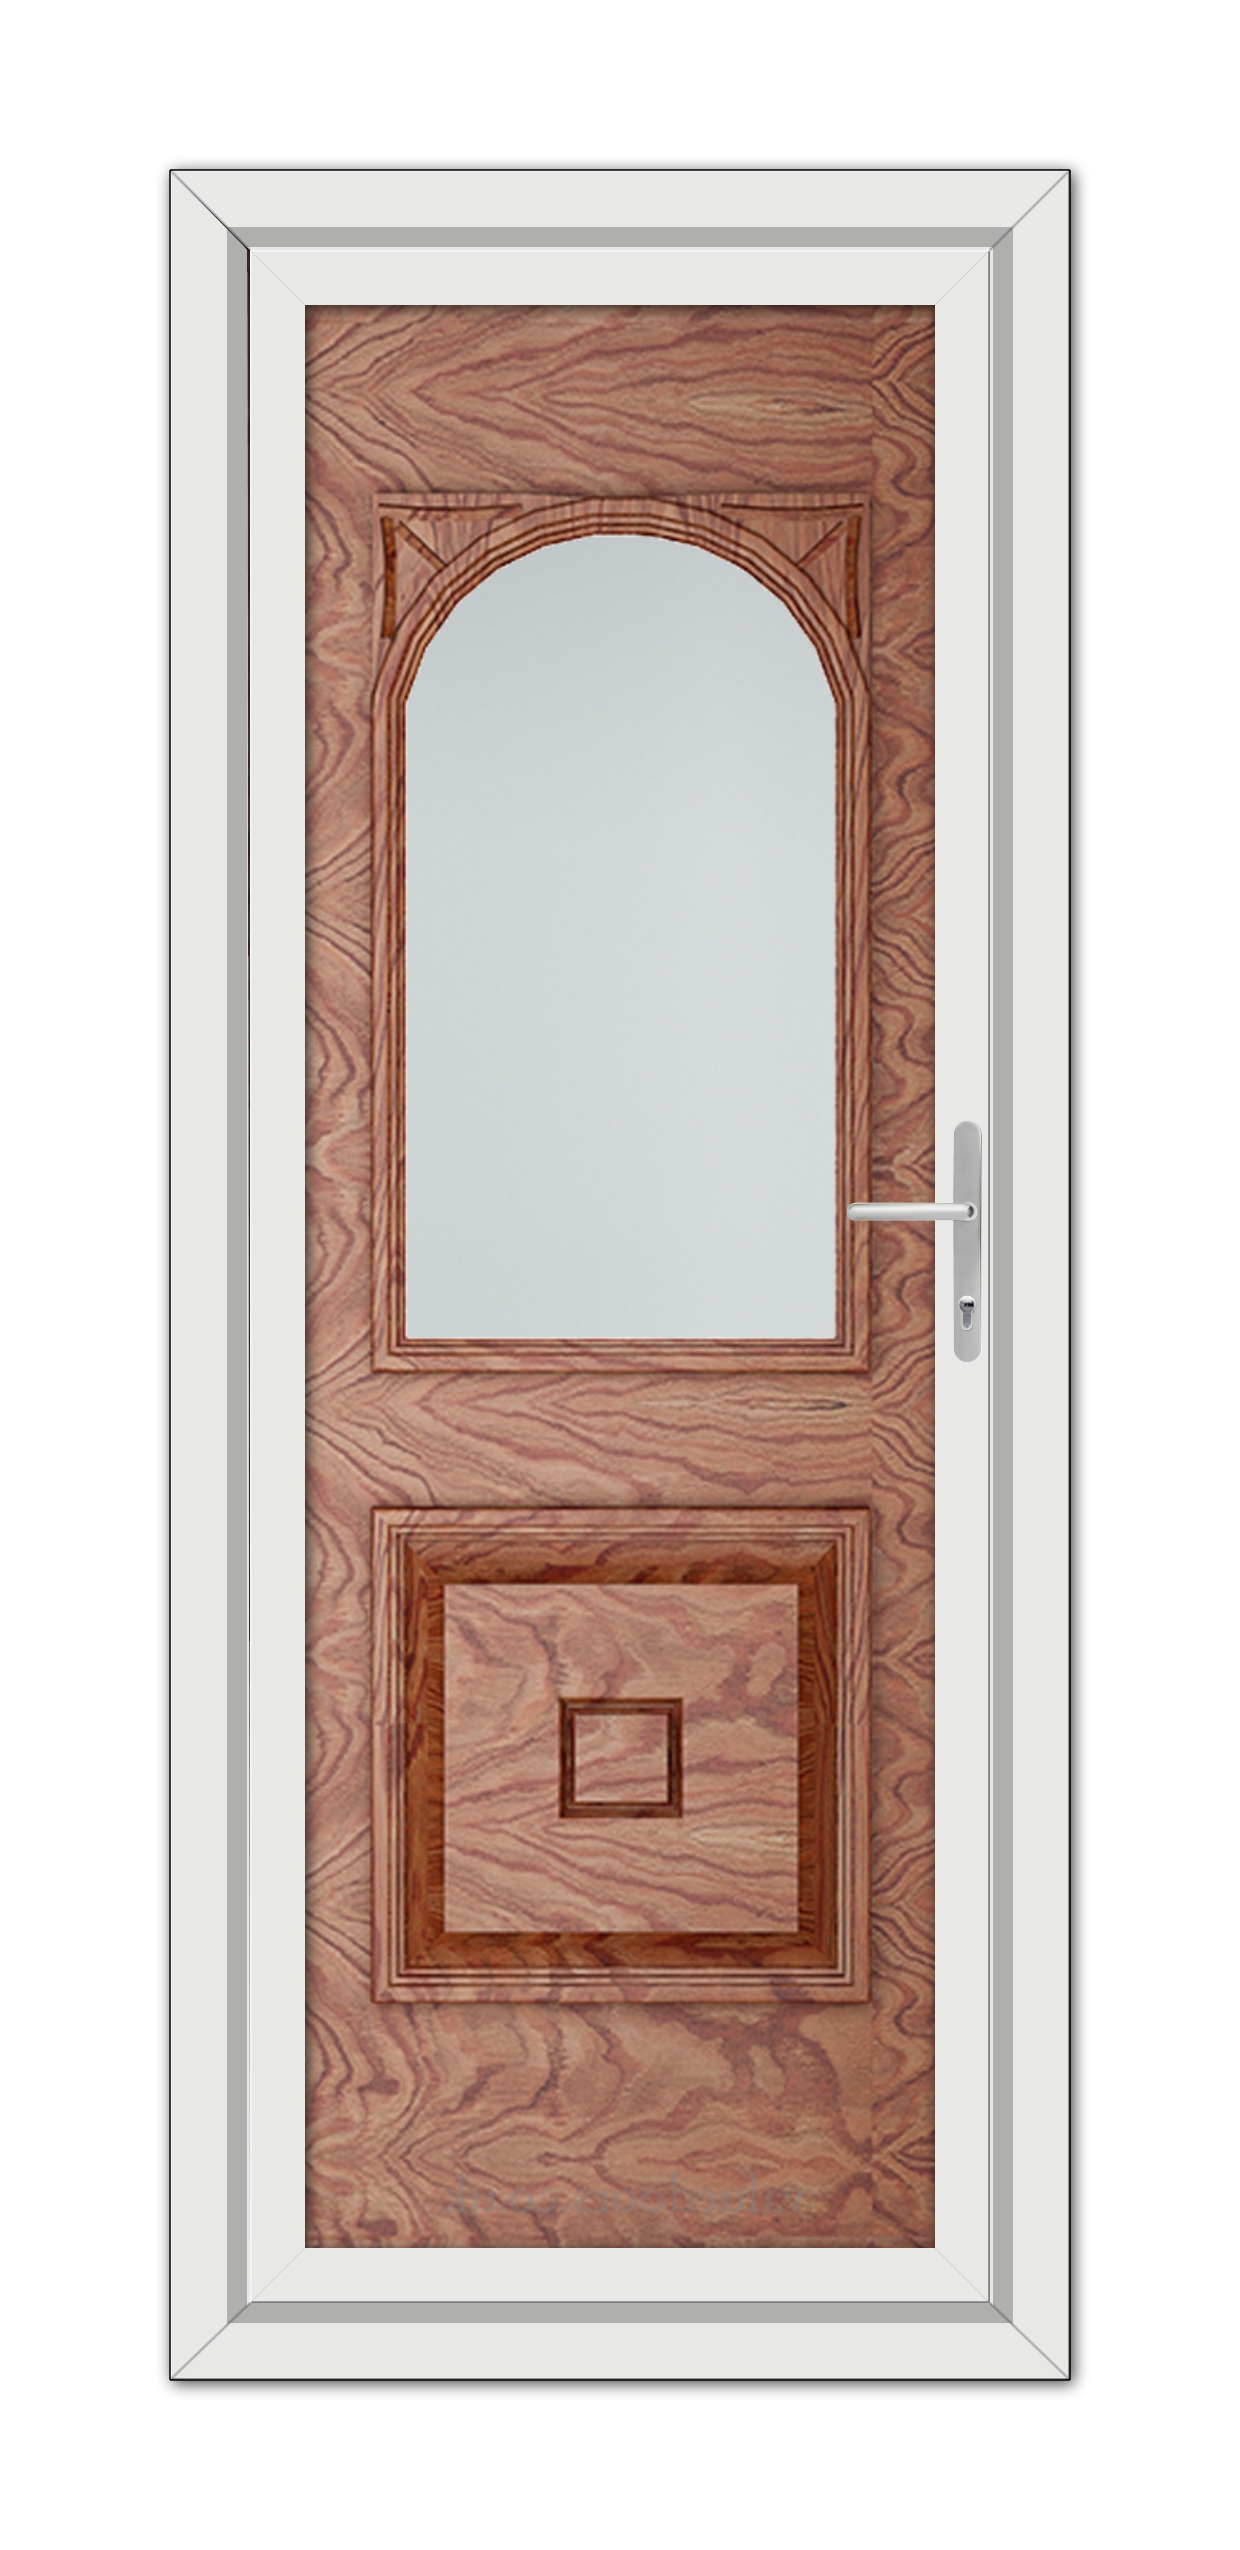 Solid Oak Reims uPVC Door with a mirror.